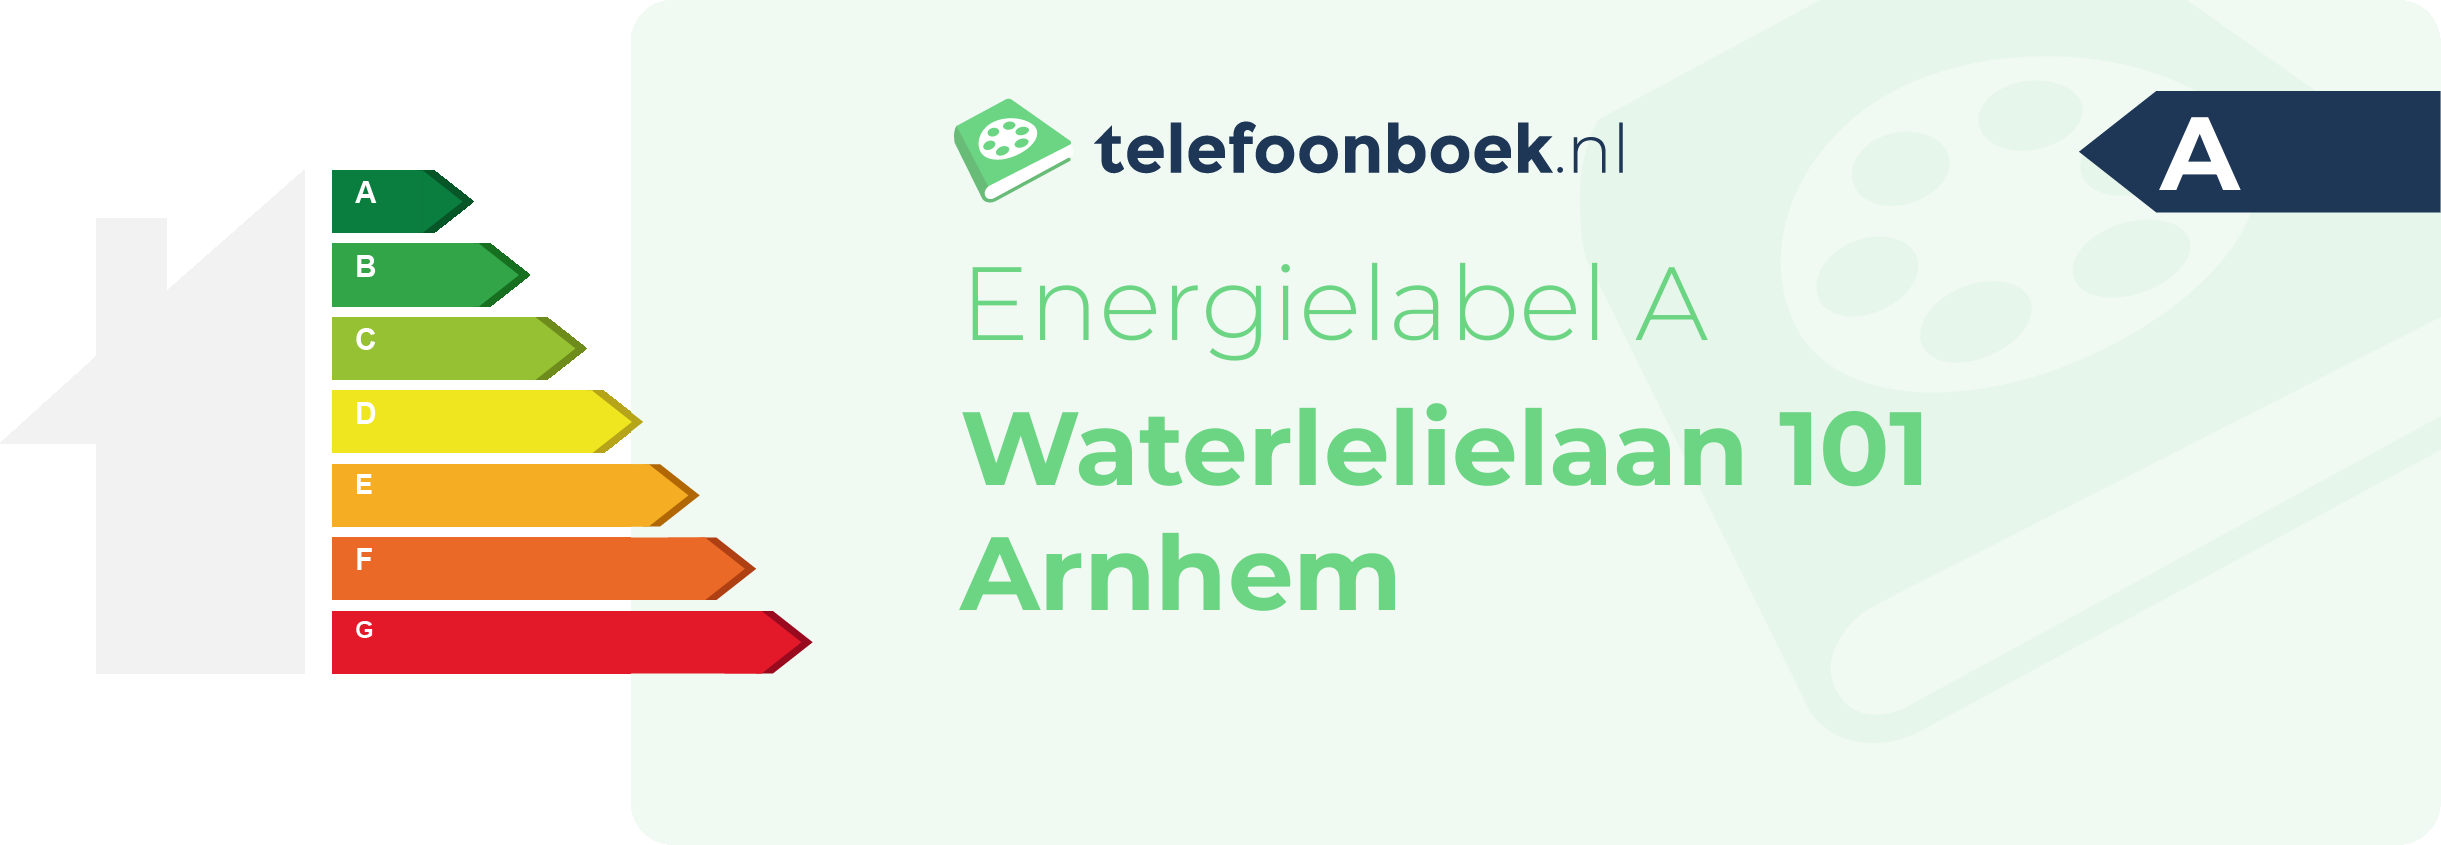 Energielabel Waterlelielaan 101 Arnhem